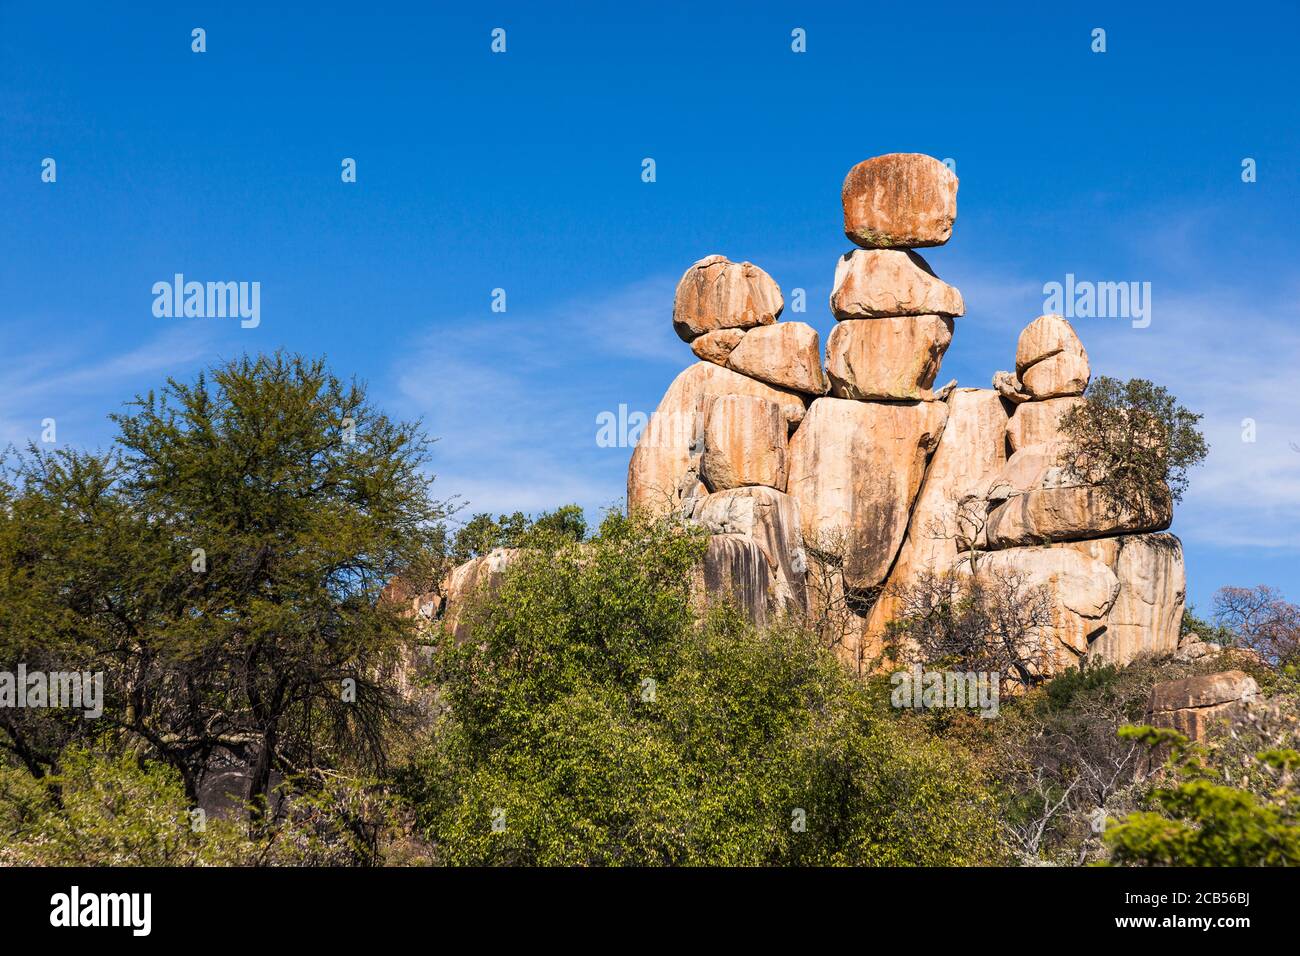 Matobo hills, natural balancing rock formations, Matopos Game Park, Matobo National Park, suburbs of Bulawayo, Matabeleland South, Zimbabwe, Africa Stock Photo